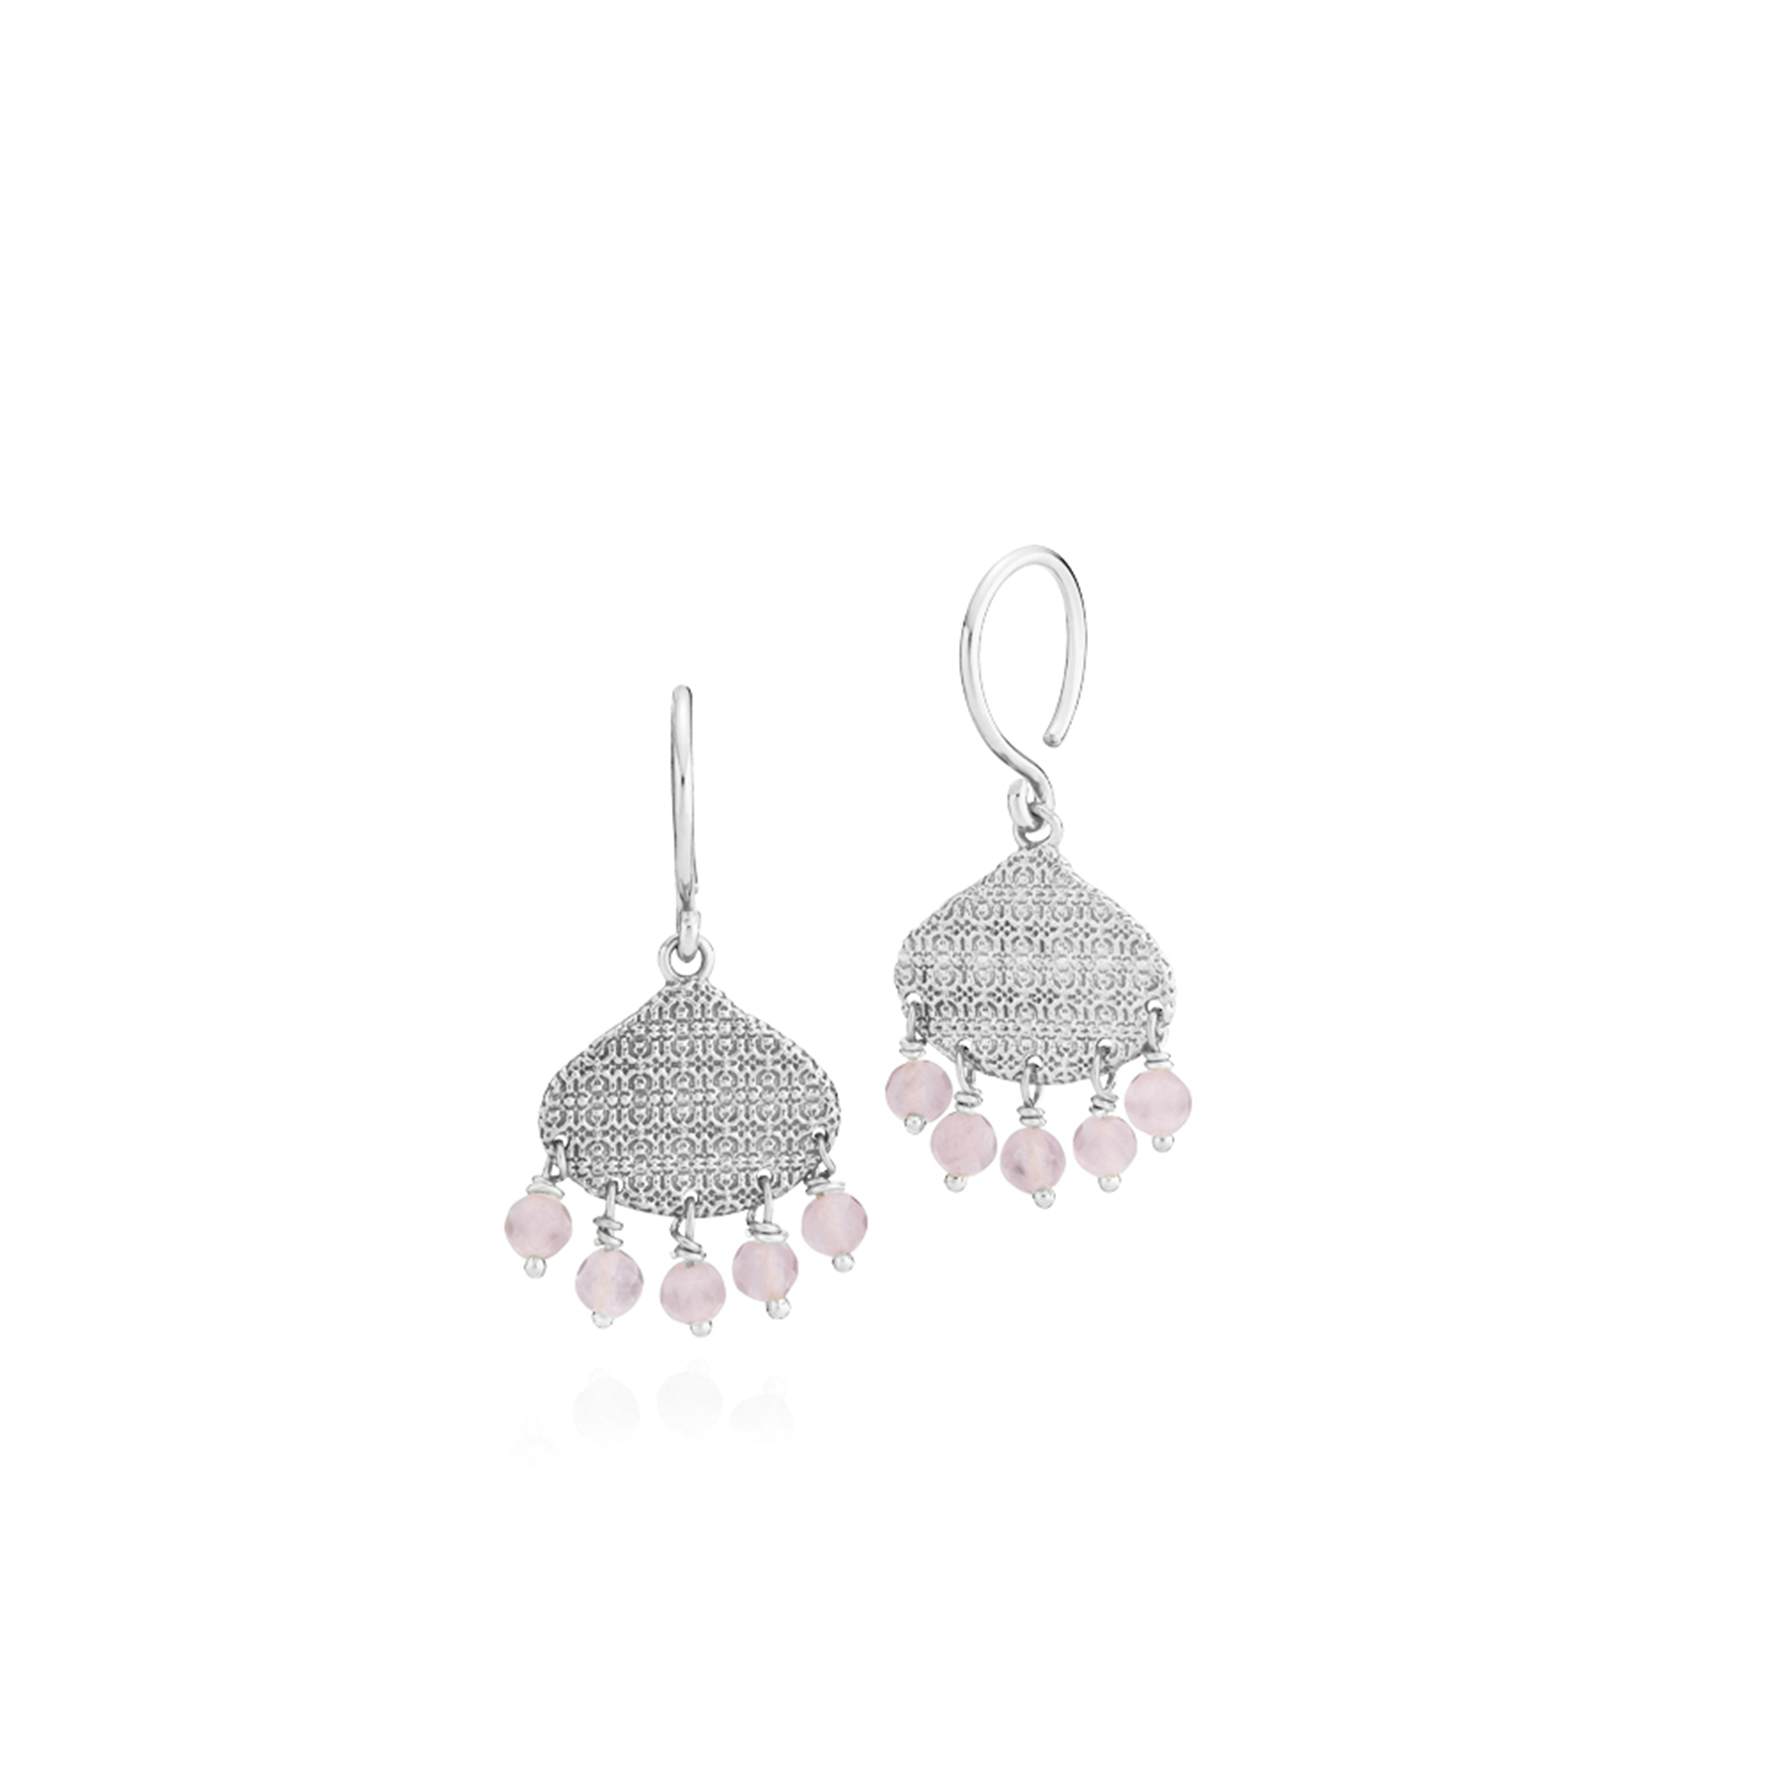 Boheme Pink Earrings from Sistie in Silver Sterling 925